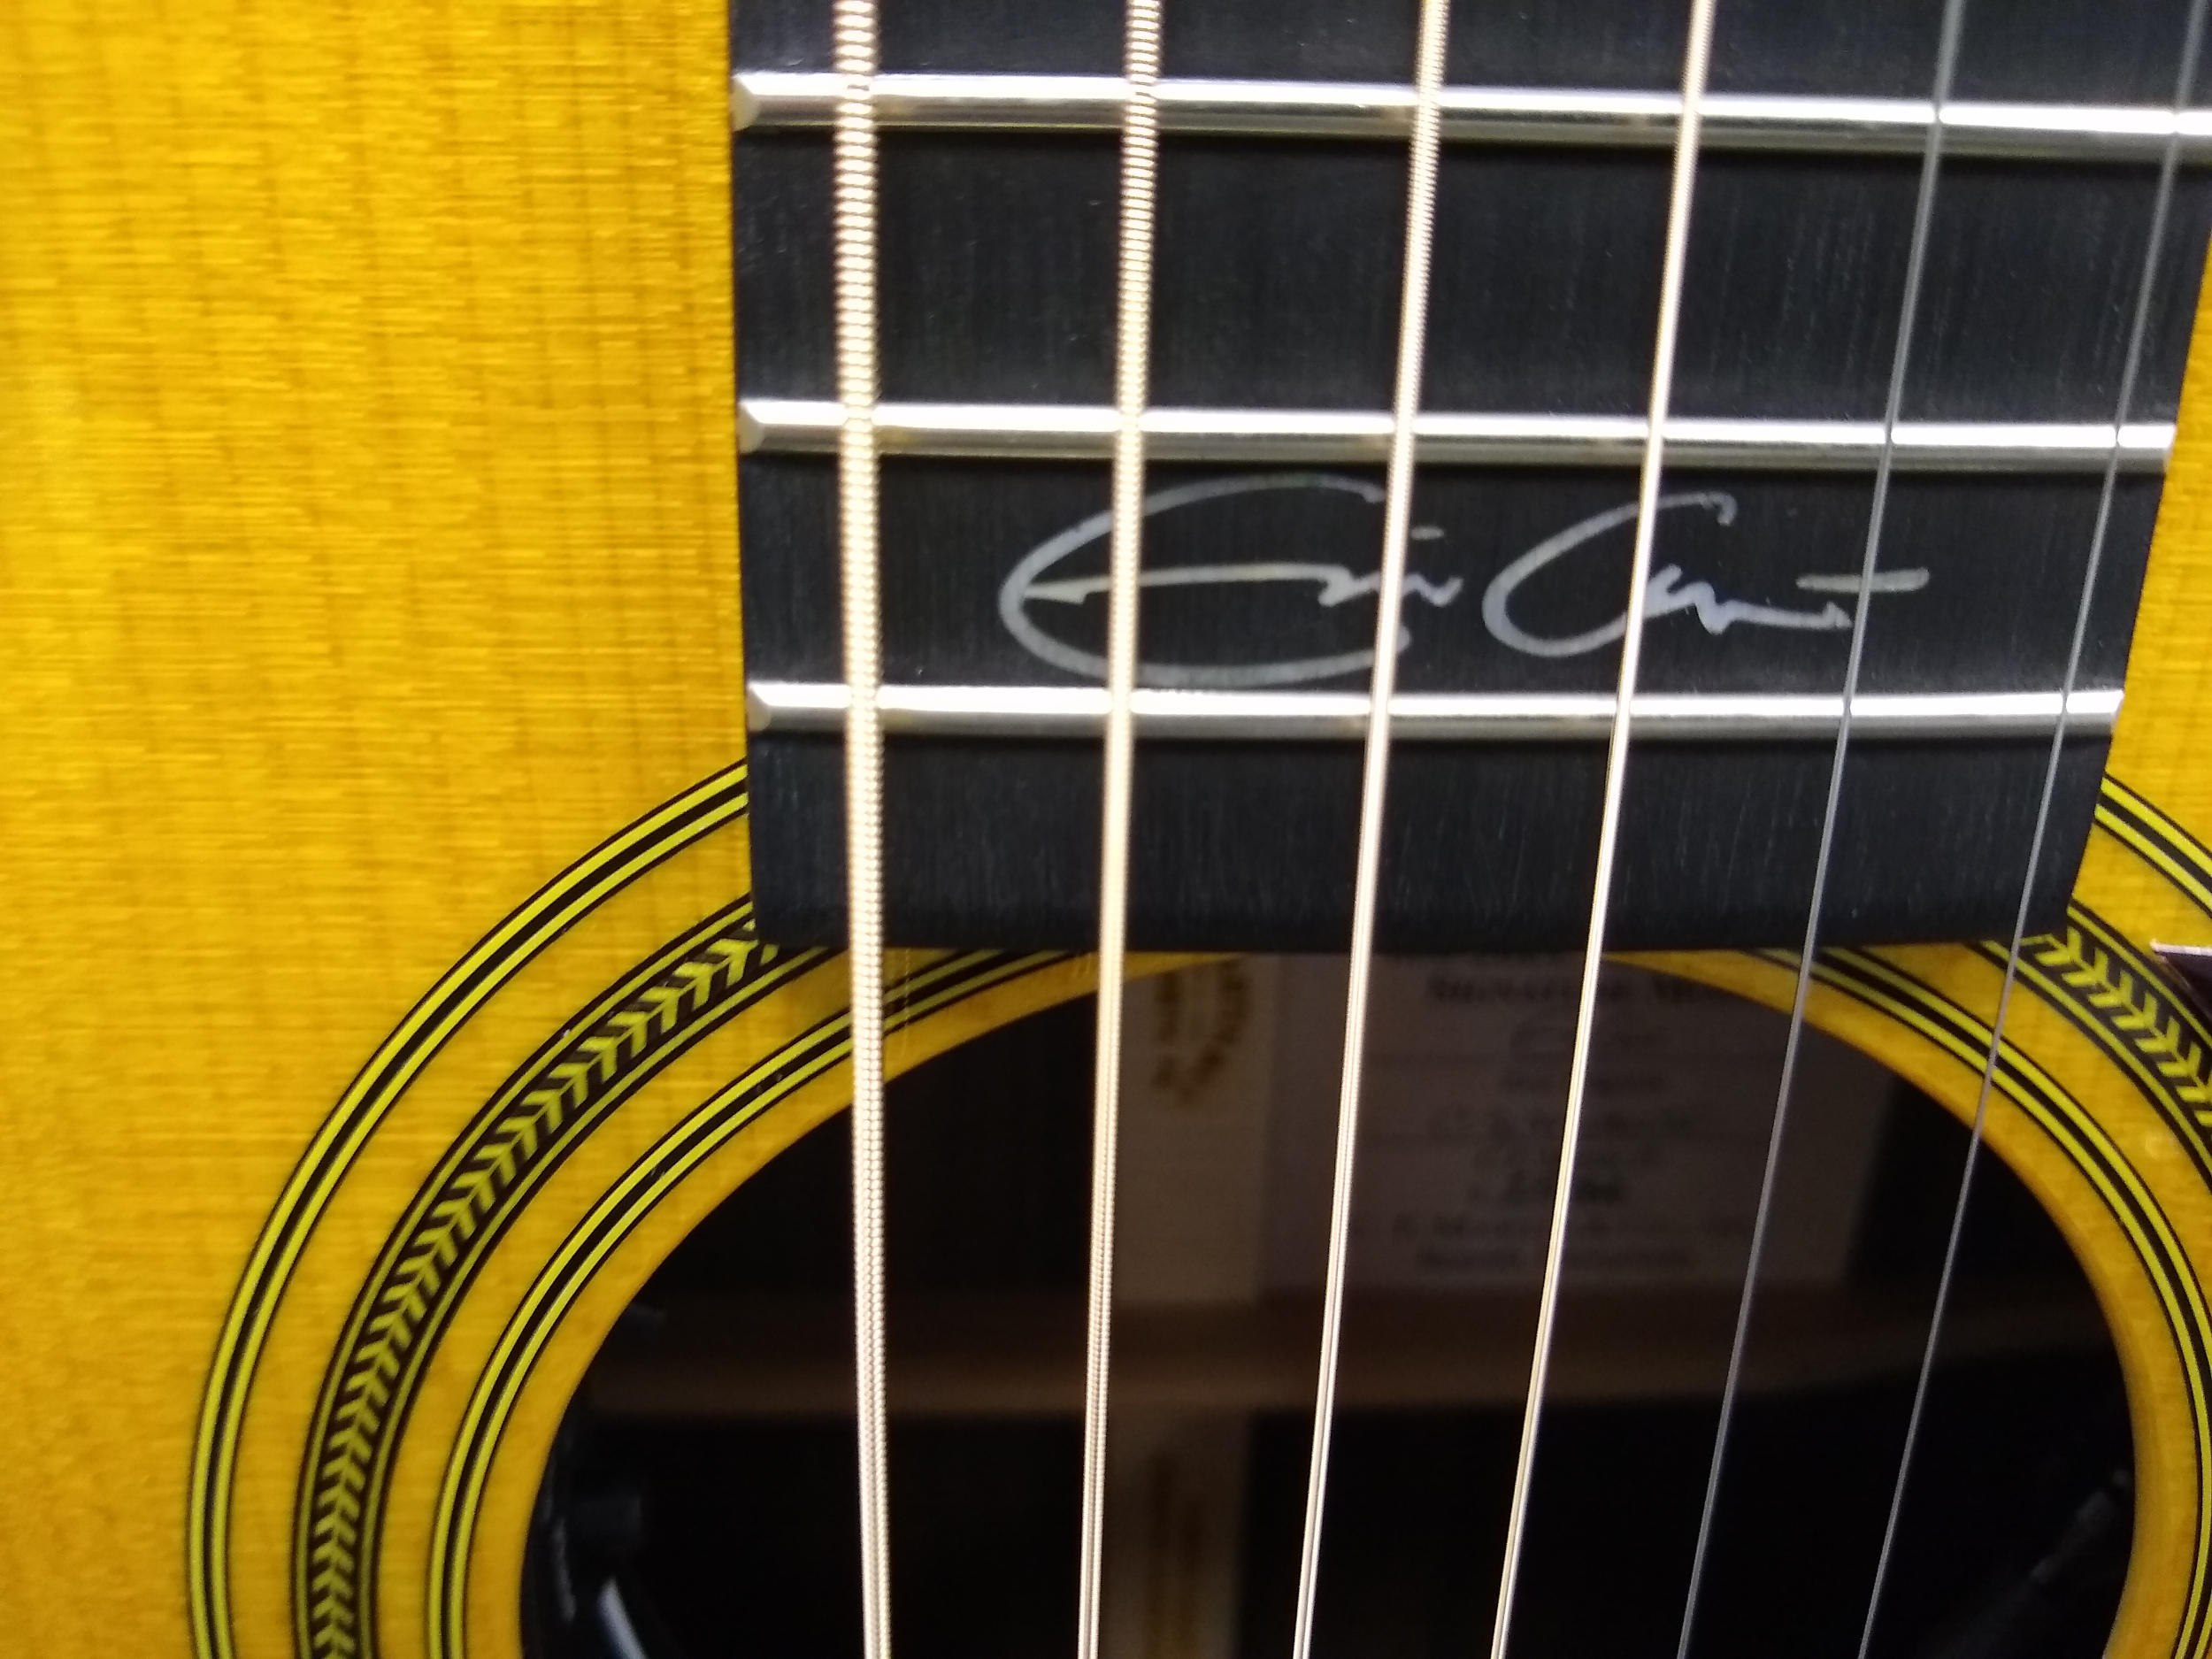 Martin 0028EC Eric Clapton Signature Guitar 25/84